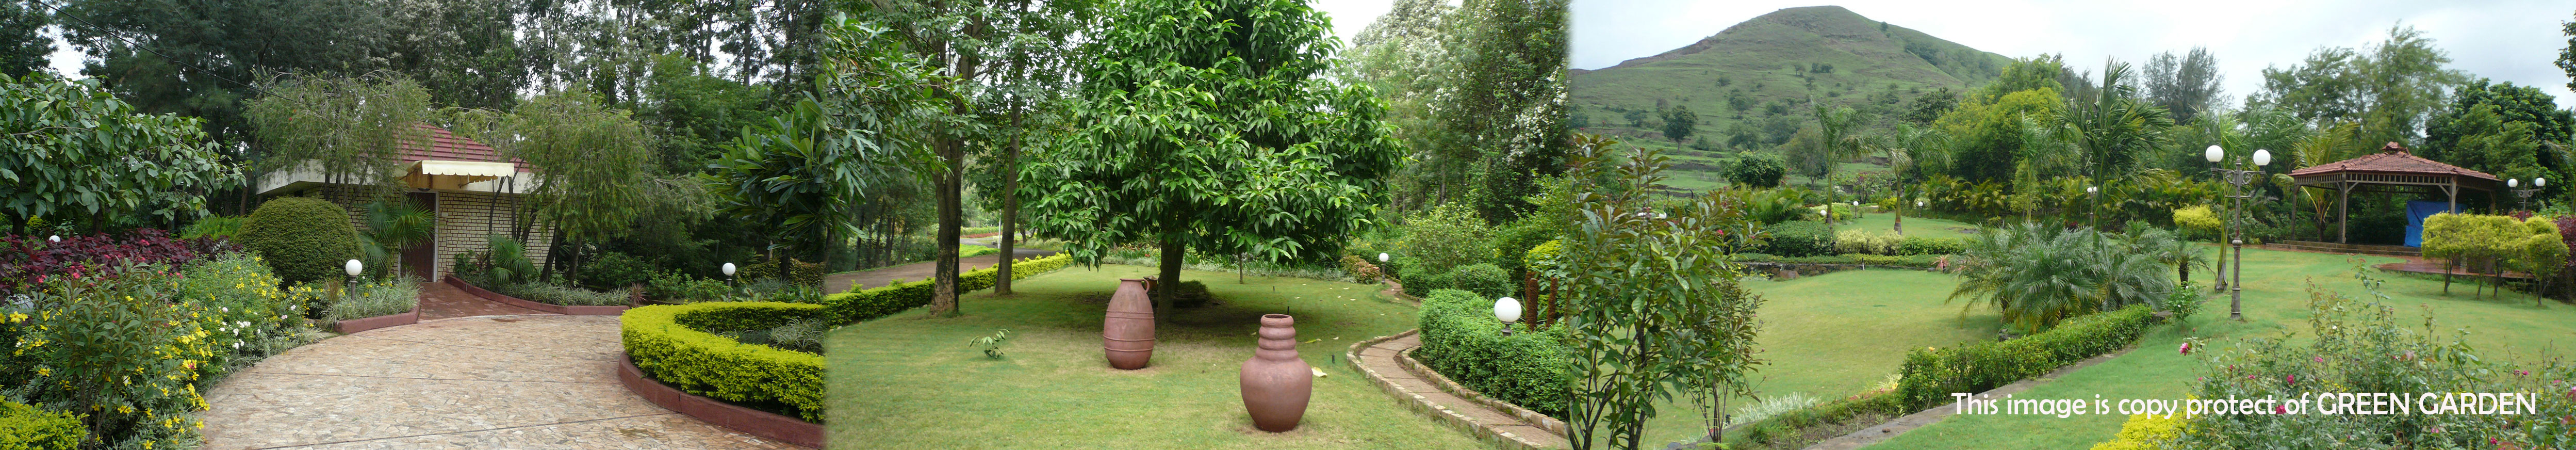 Green Garden - Dr. Nitin Bhore